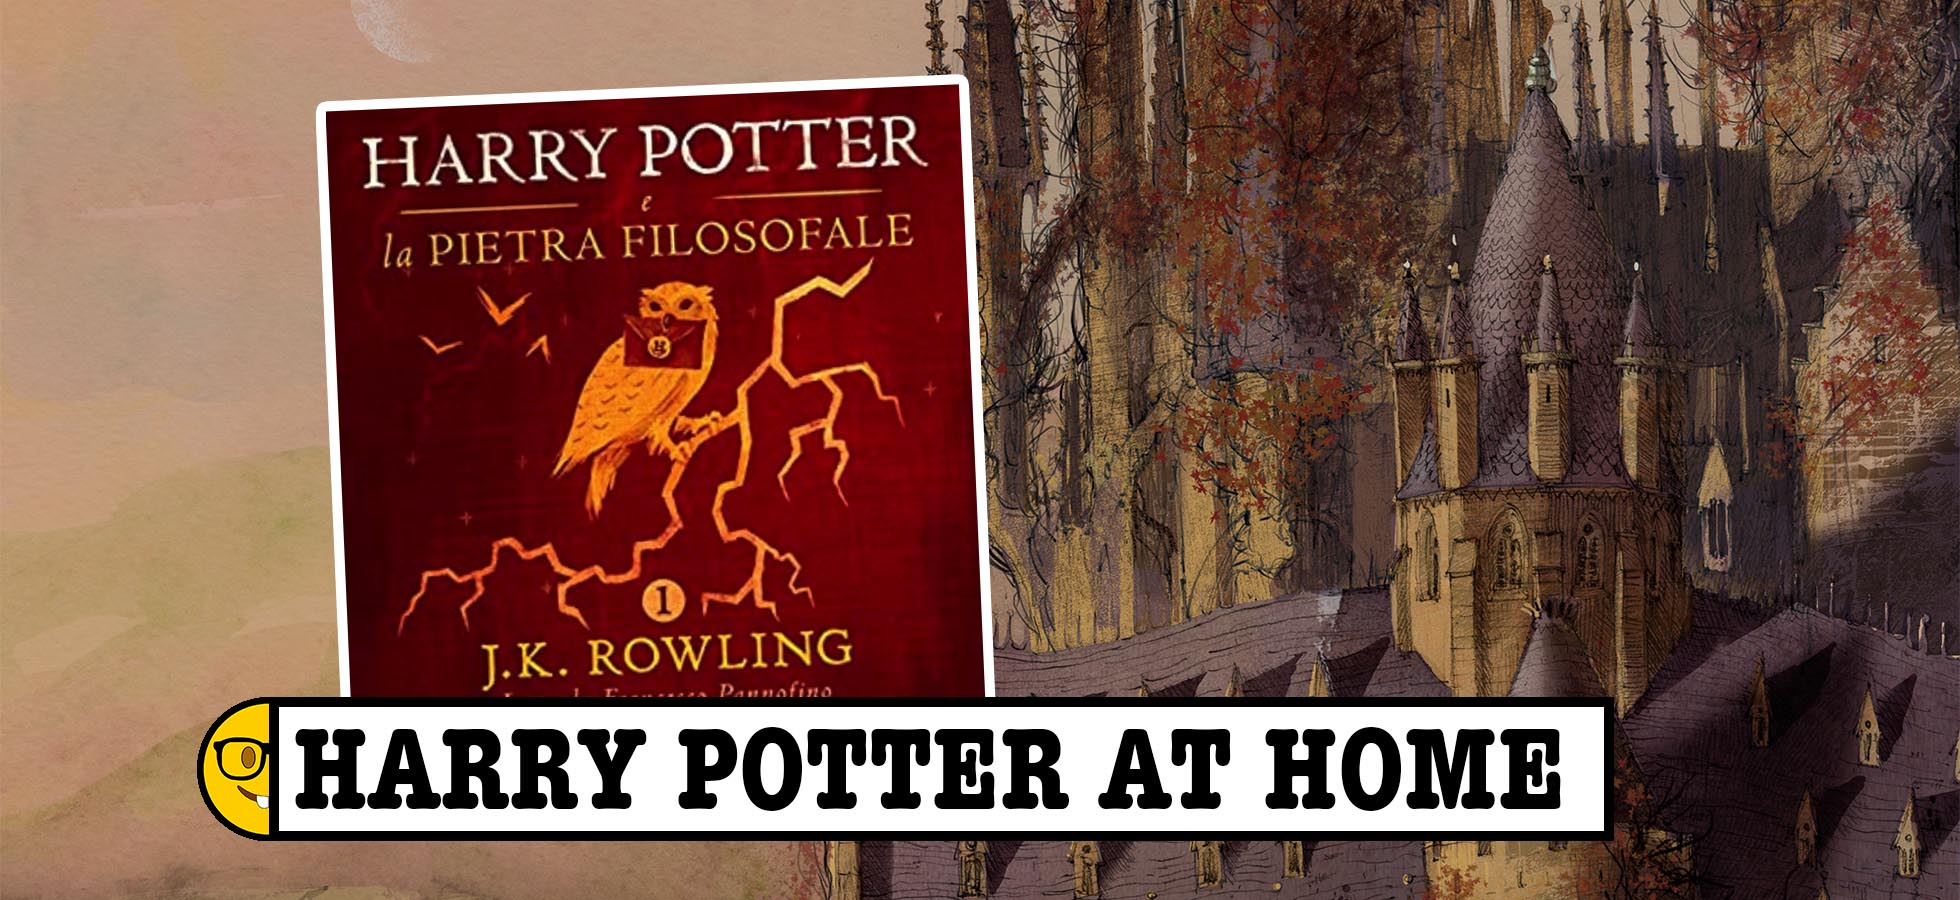 Harry Potter e la Pietra Filosofale ebook by J.K. Rowling - Rakuten Kobo